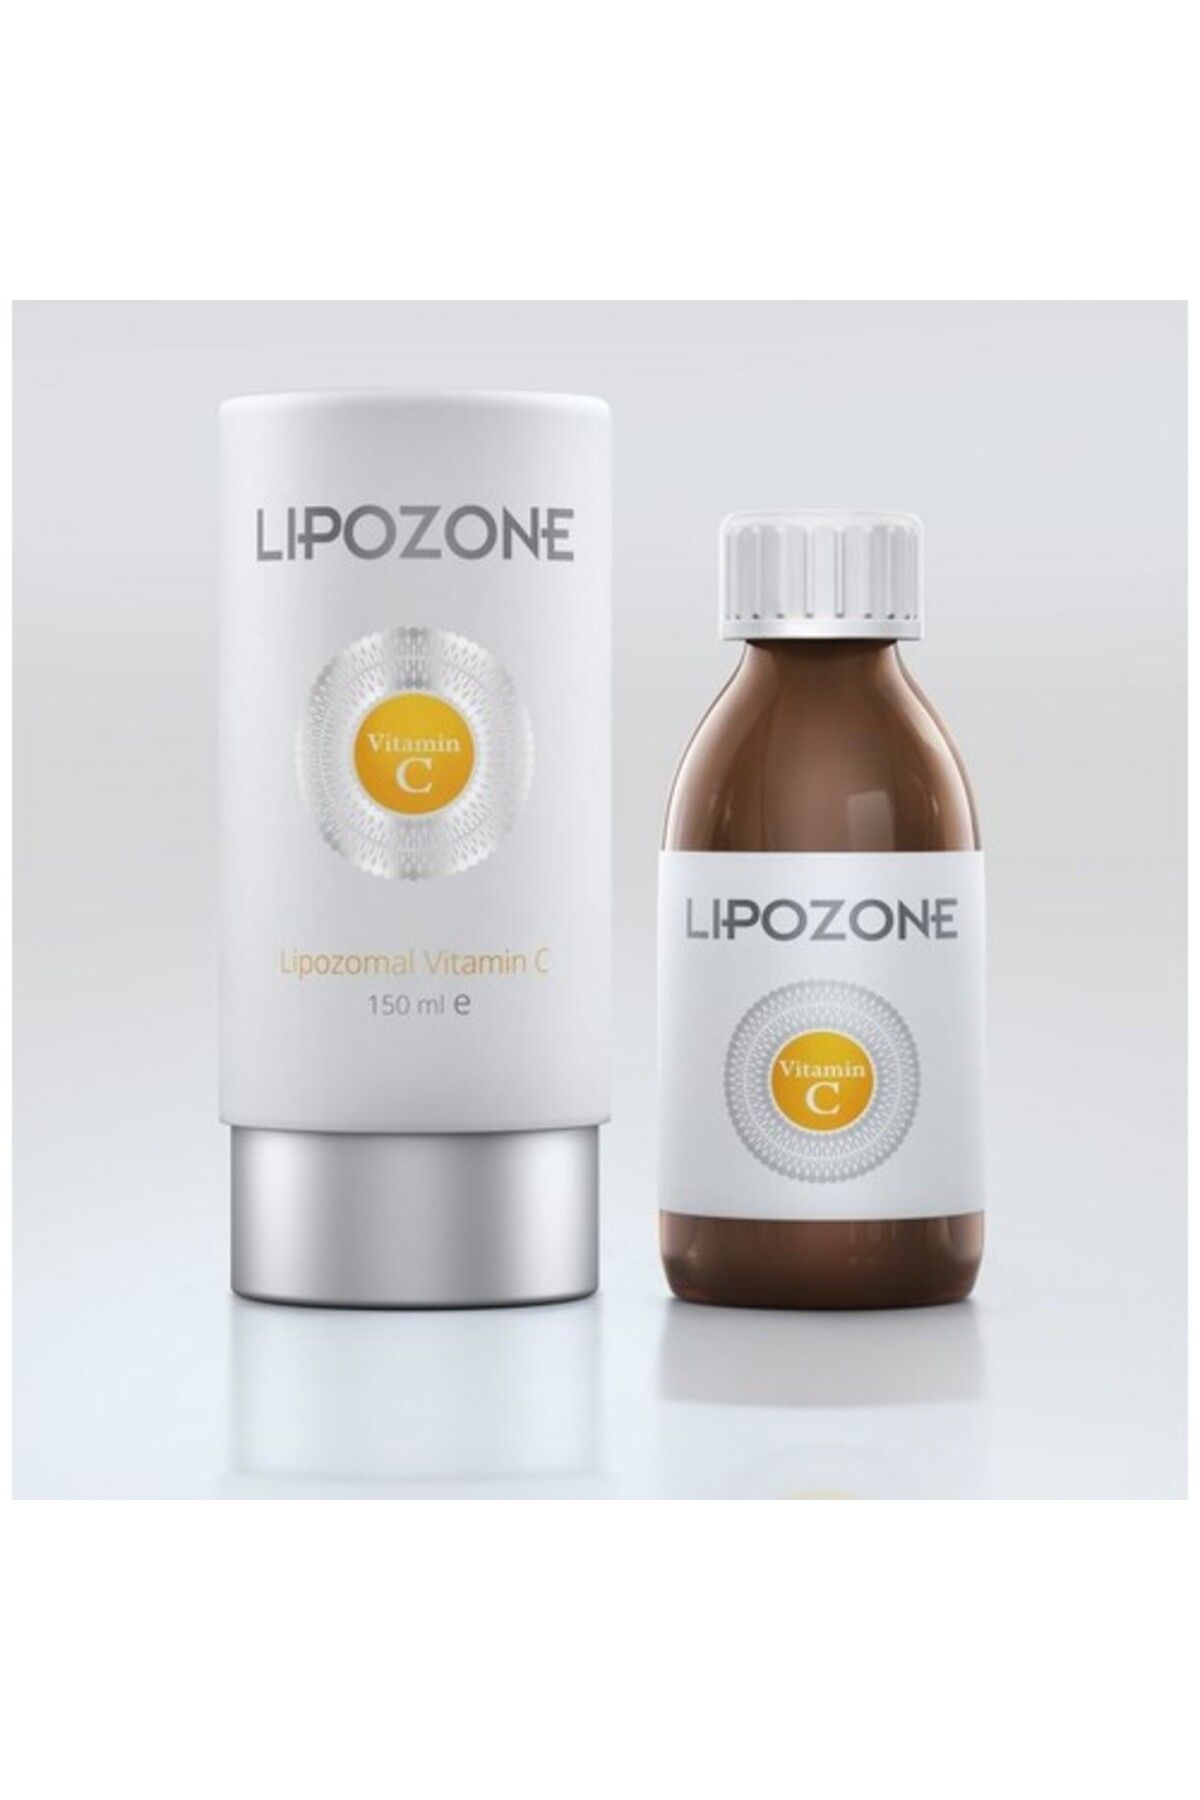 Lipozone Lipozomal C Vitamini 150 ml